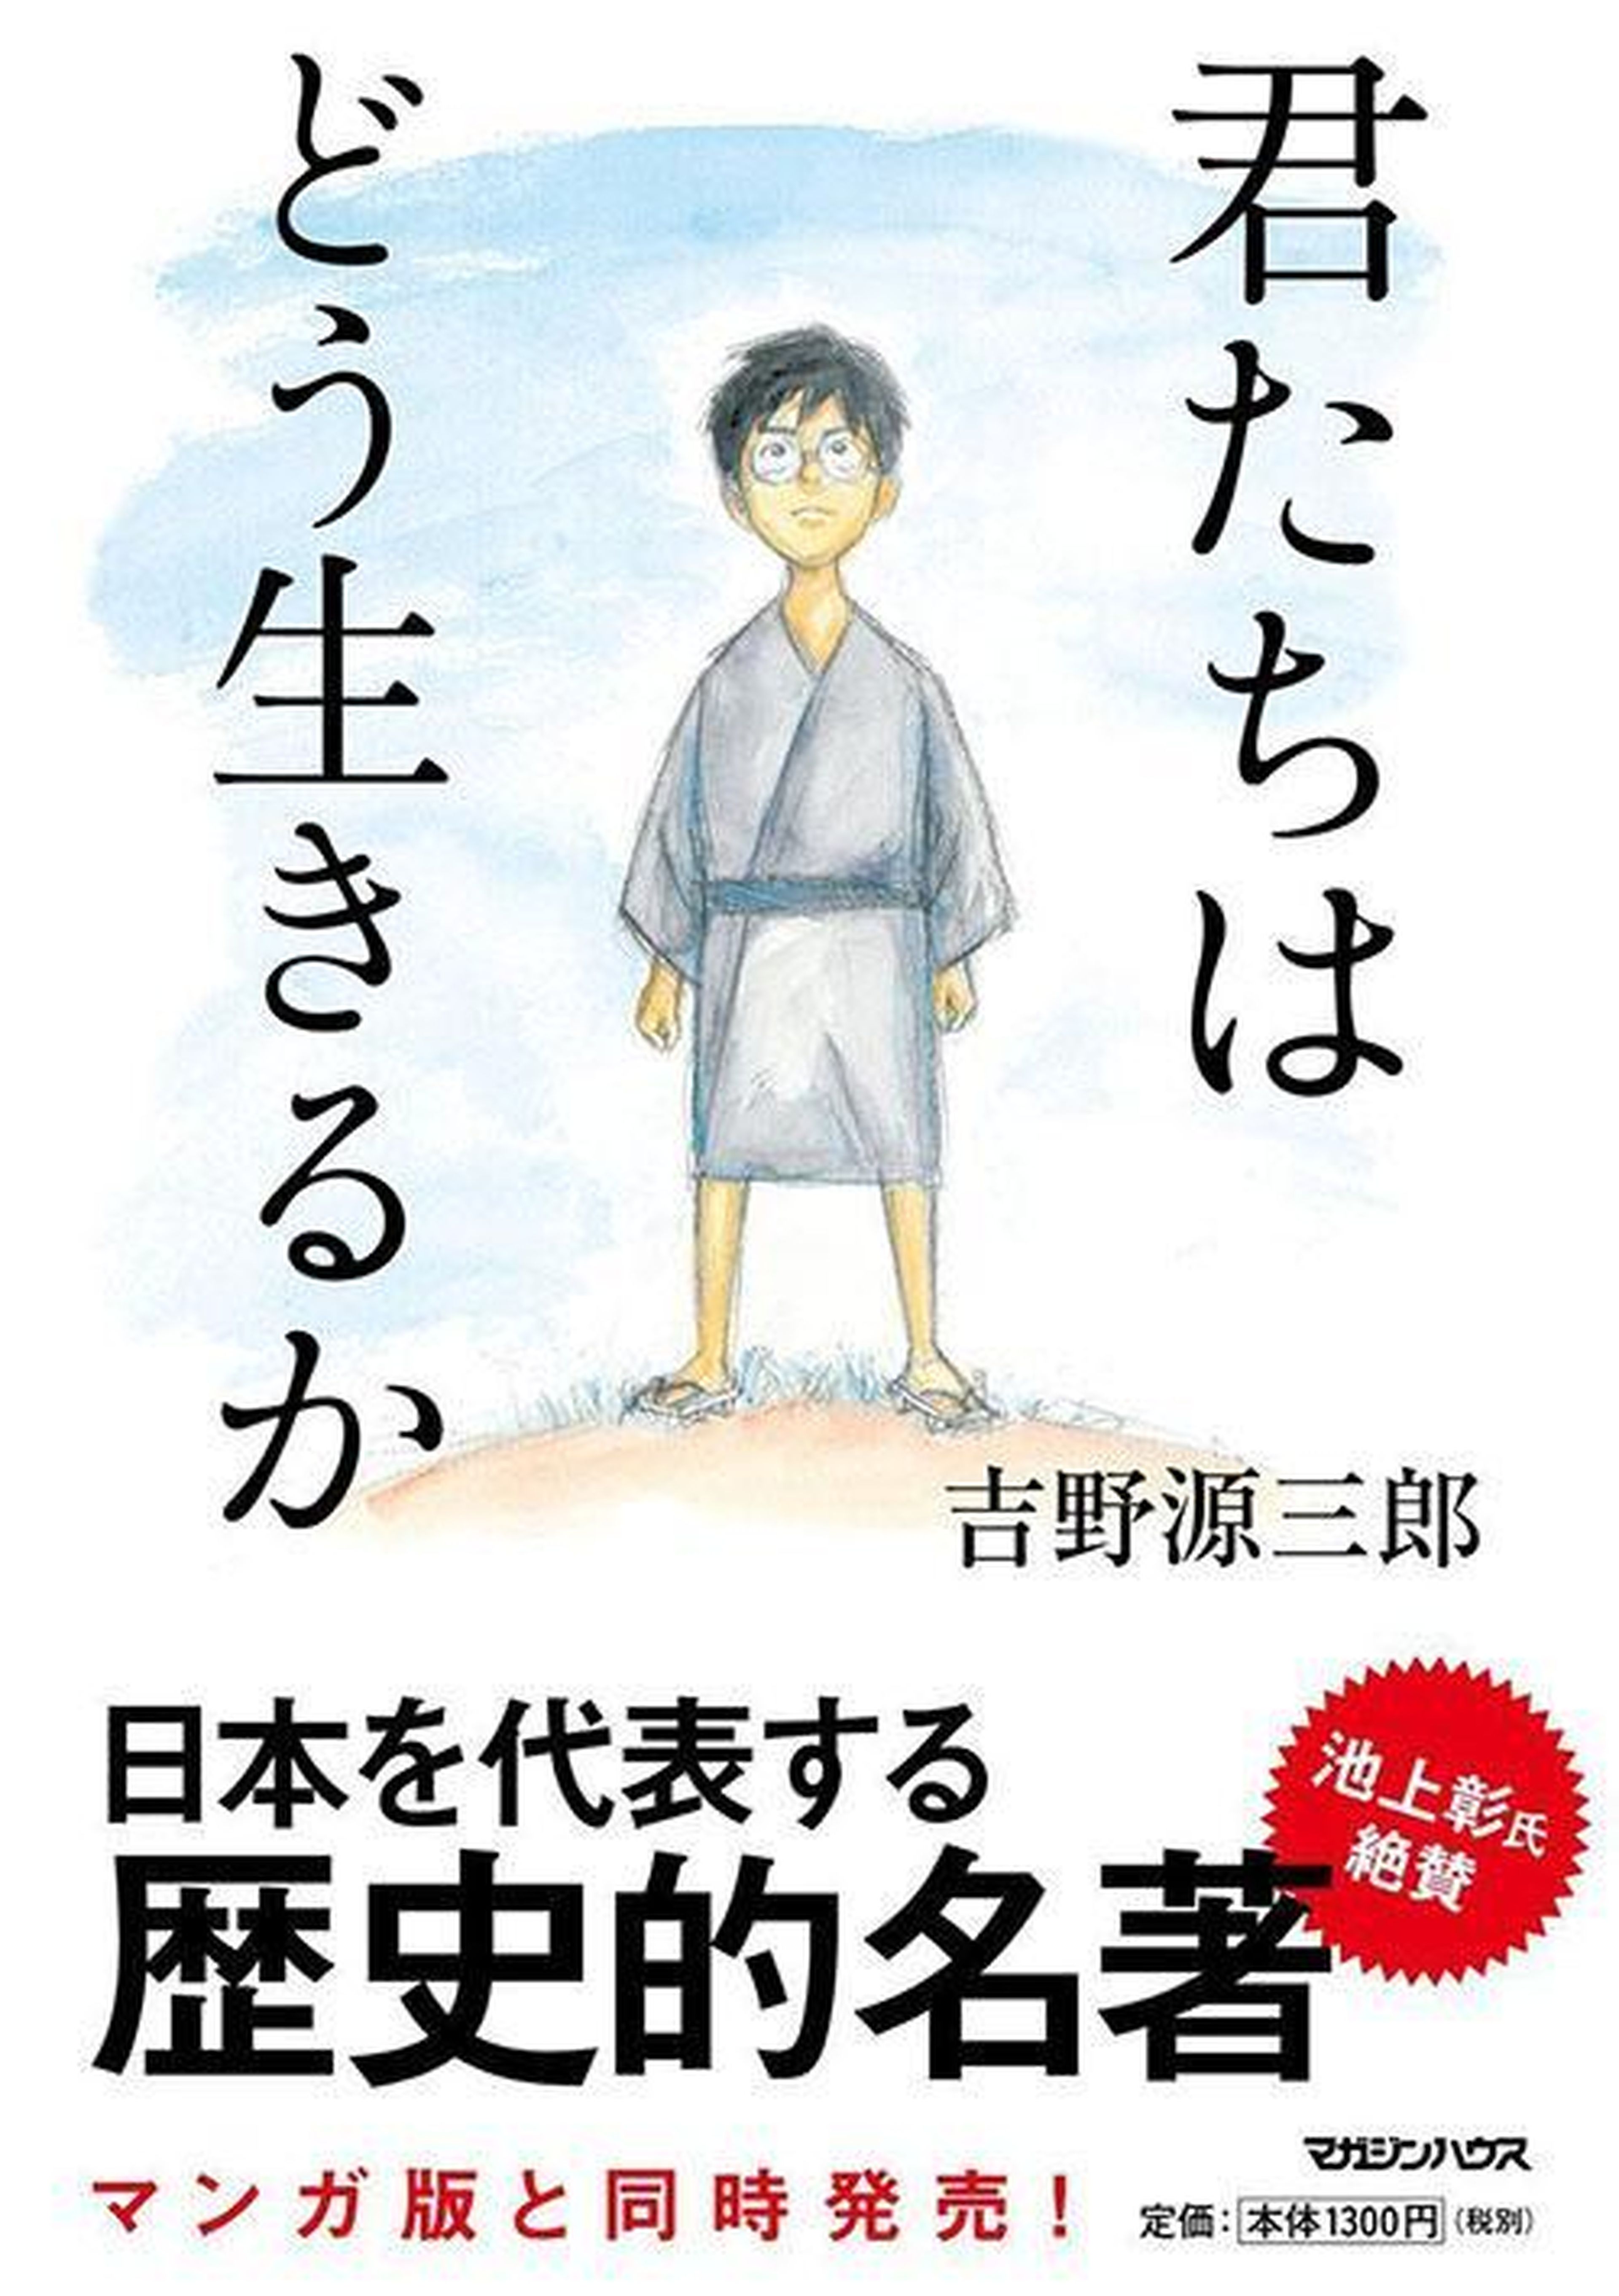  How Do You Live? Kimitachi wa dô ikiru ka ¿Cómo vives? Hayao Miyazaki  Studio Ghibli